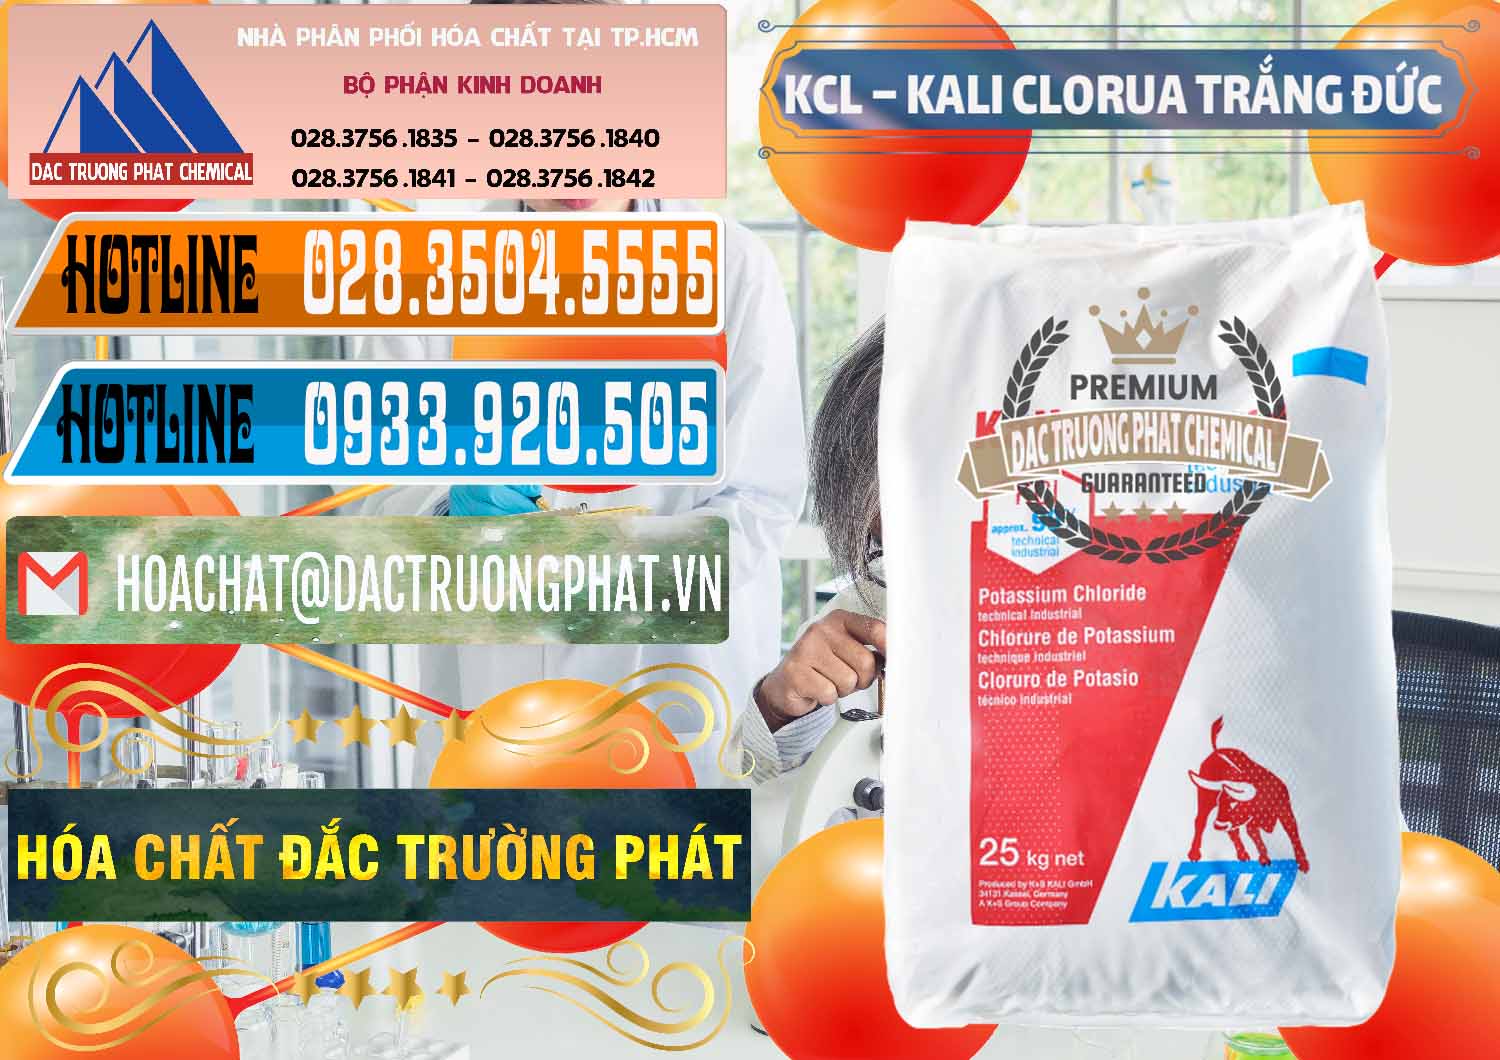 Chuyên kinh doanh và bán KCL – Kali Clorua Trắng Đức Germany - 0086 - Cty nhập khẩu _ phân phối hóa chất tại TP.HCM - stmp.net